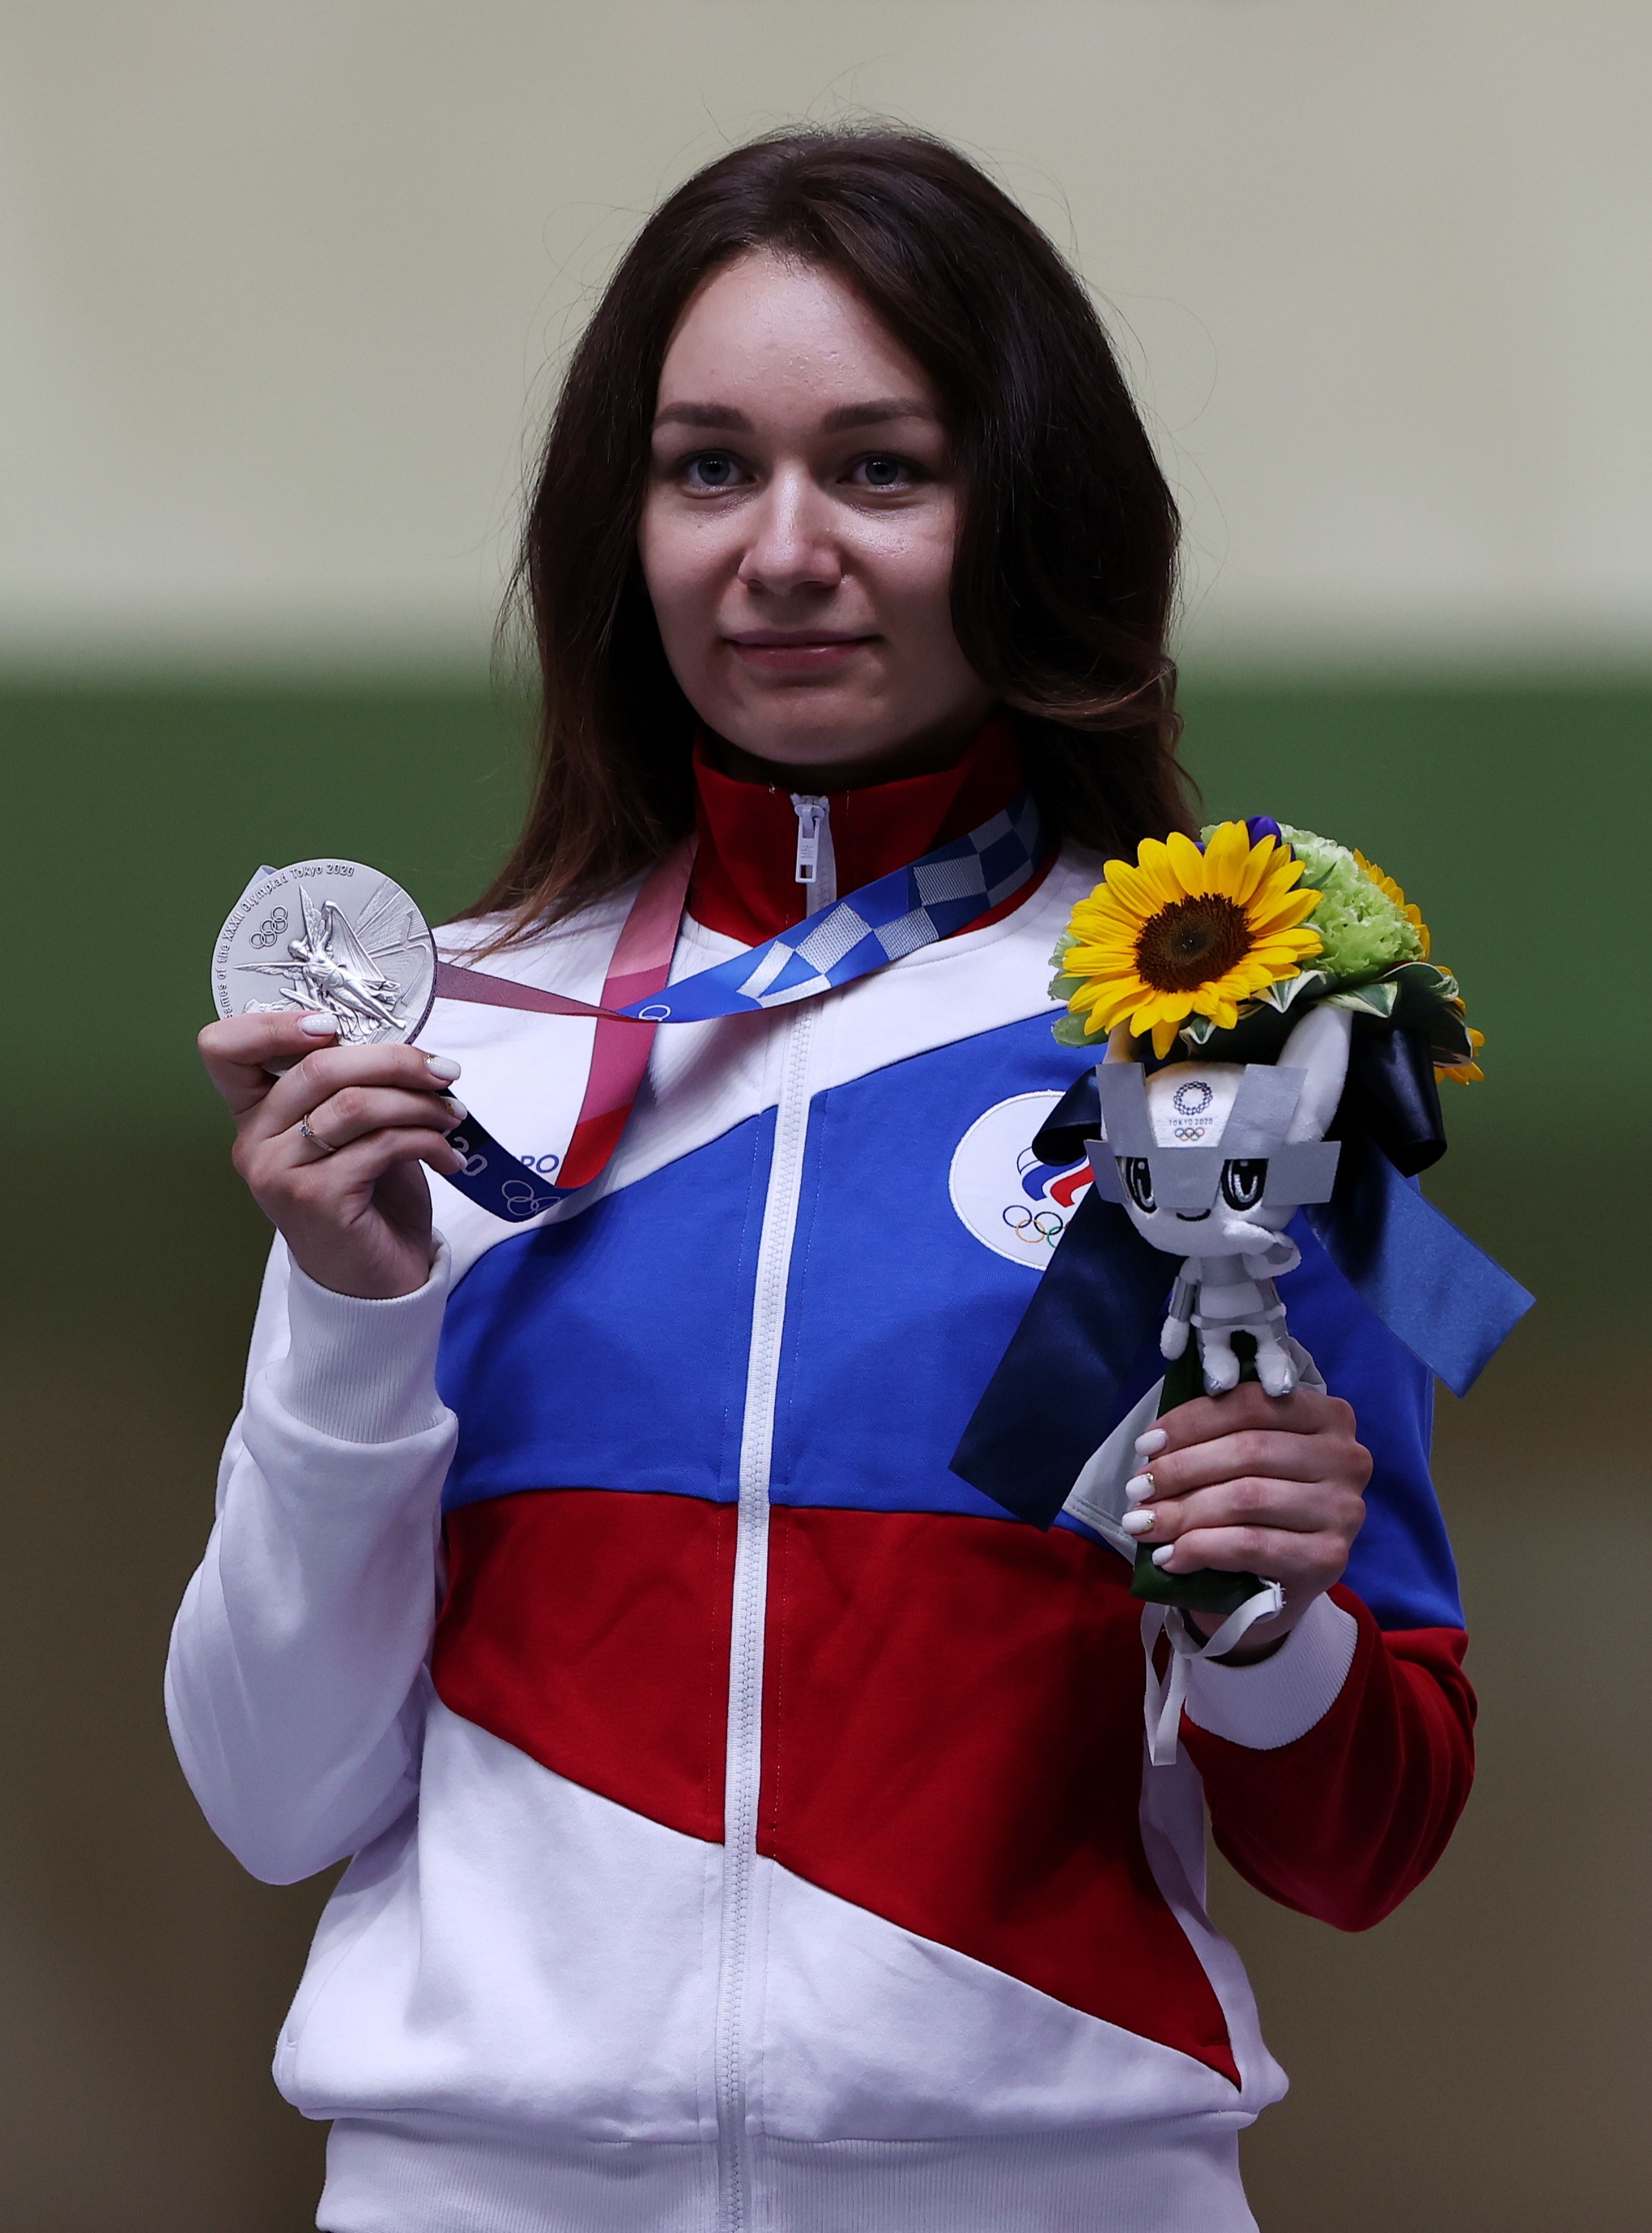 ВОСЬМОЙ ДЕНЬ ОЛИМПИАДЫ

Юлия Зыкова выиграла серебряную медаль в стрельбе из винтовки из трех положений с дистанции 50 м